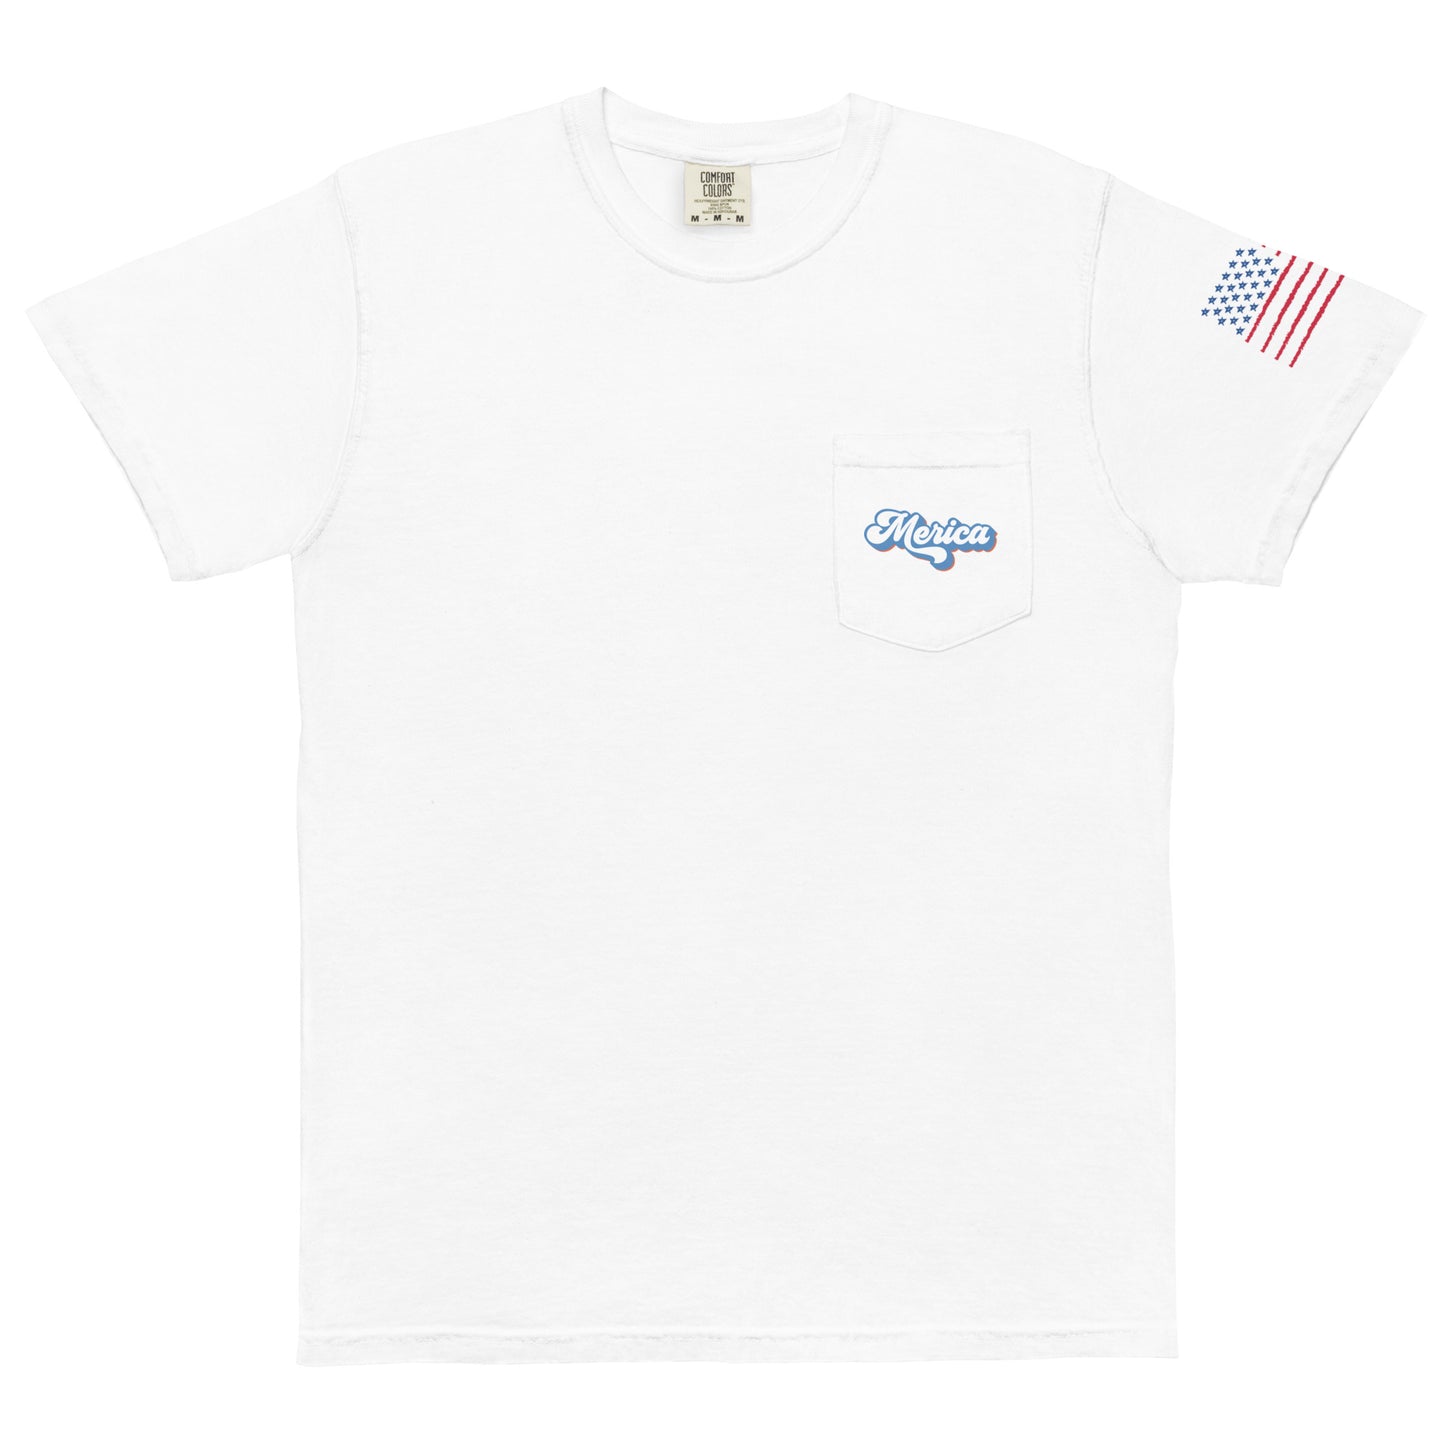 God bless America garment-dyed pocket t-shirt - White / S - Sport Finesse